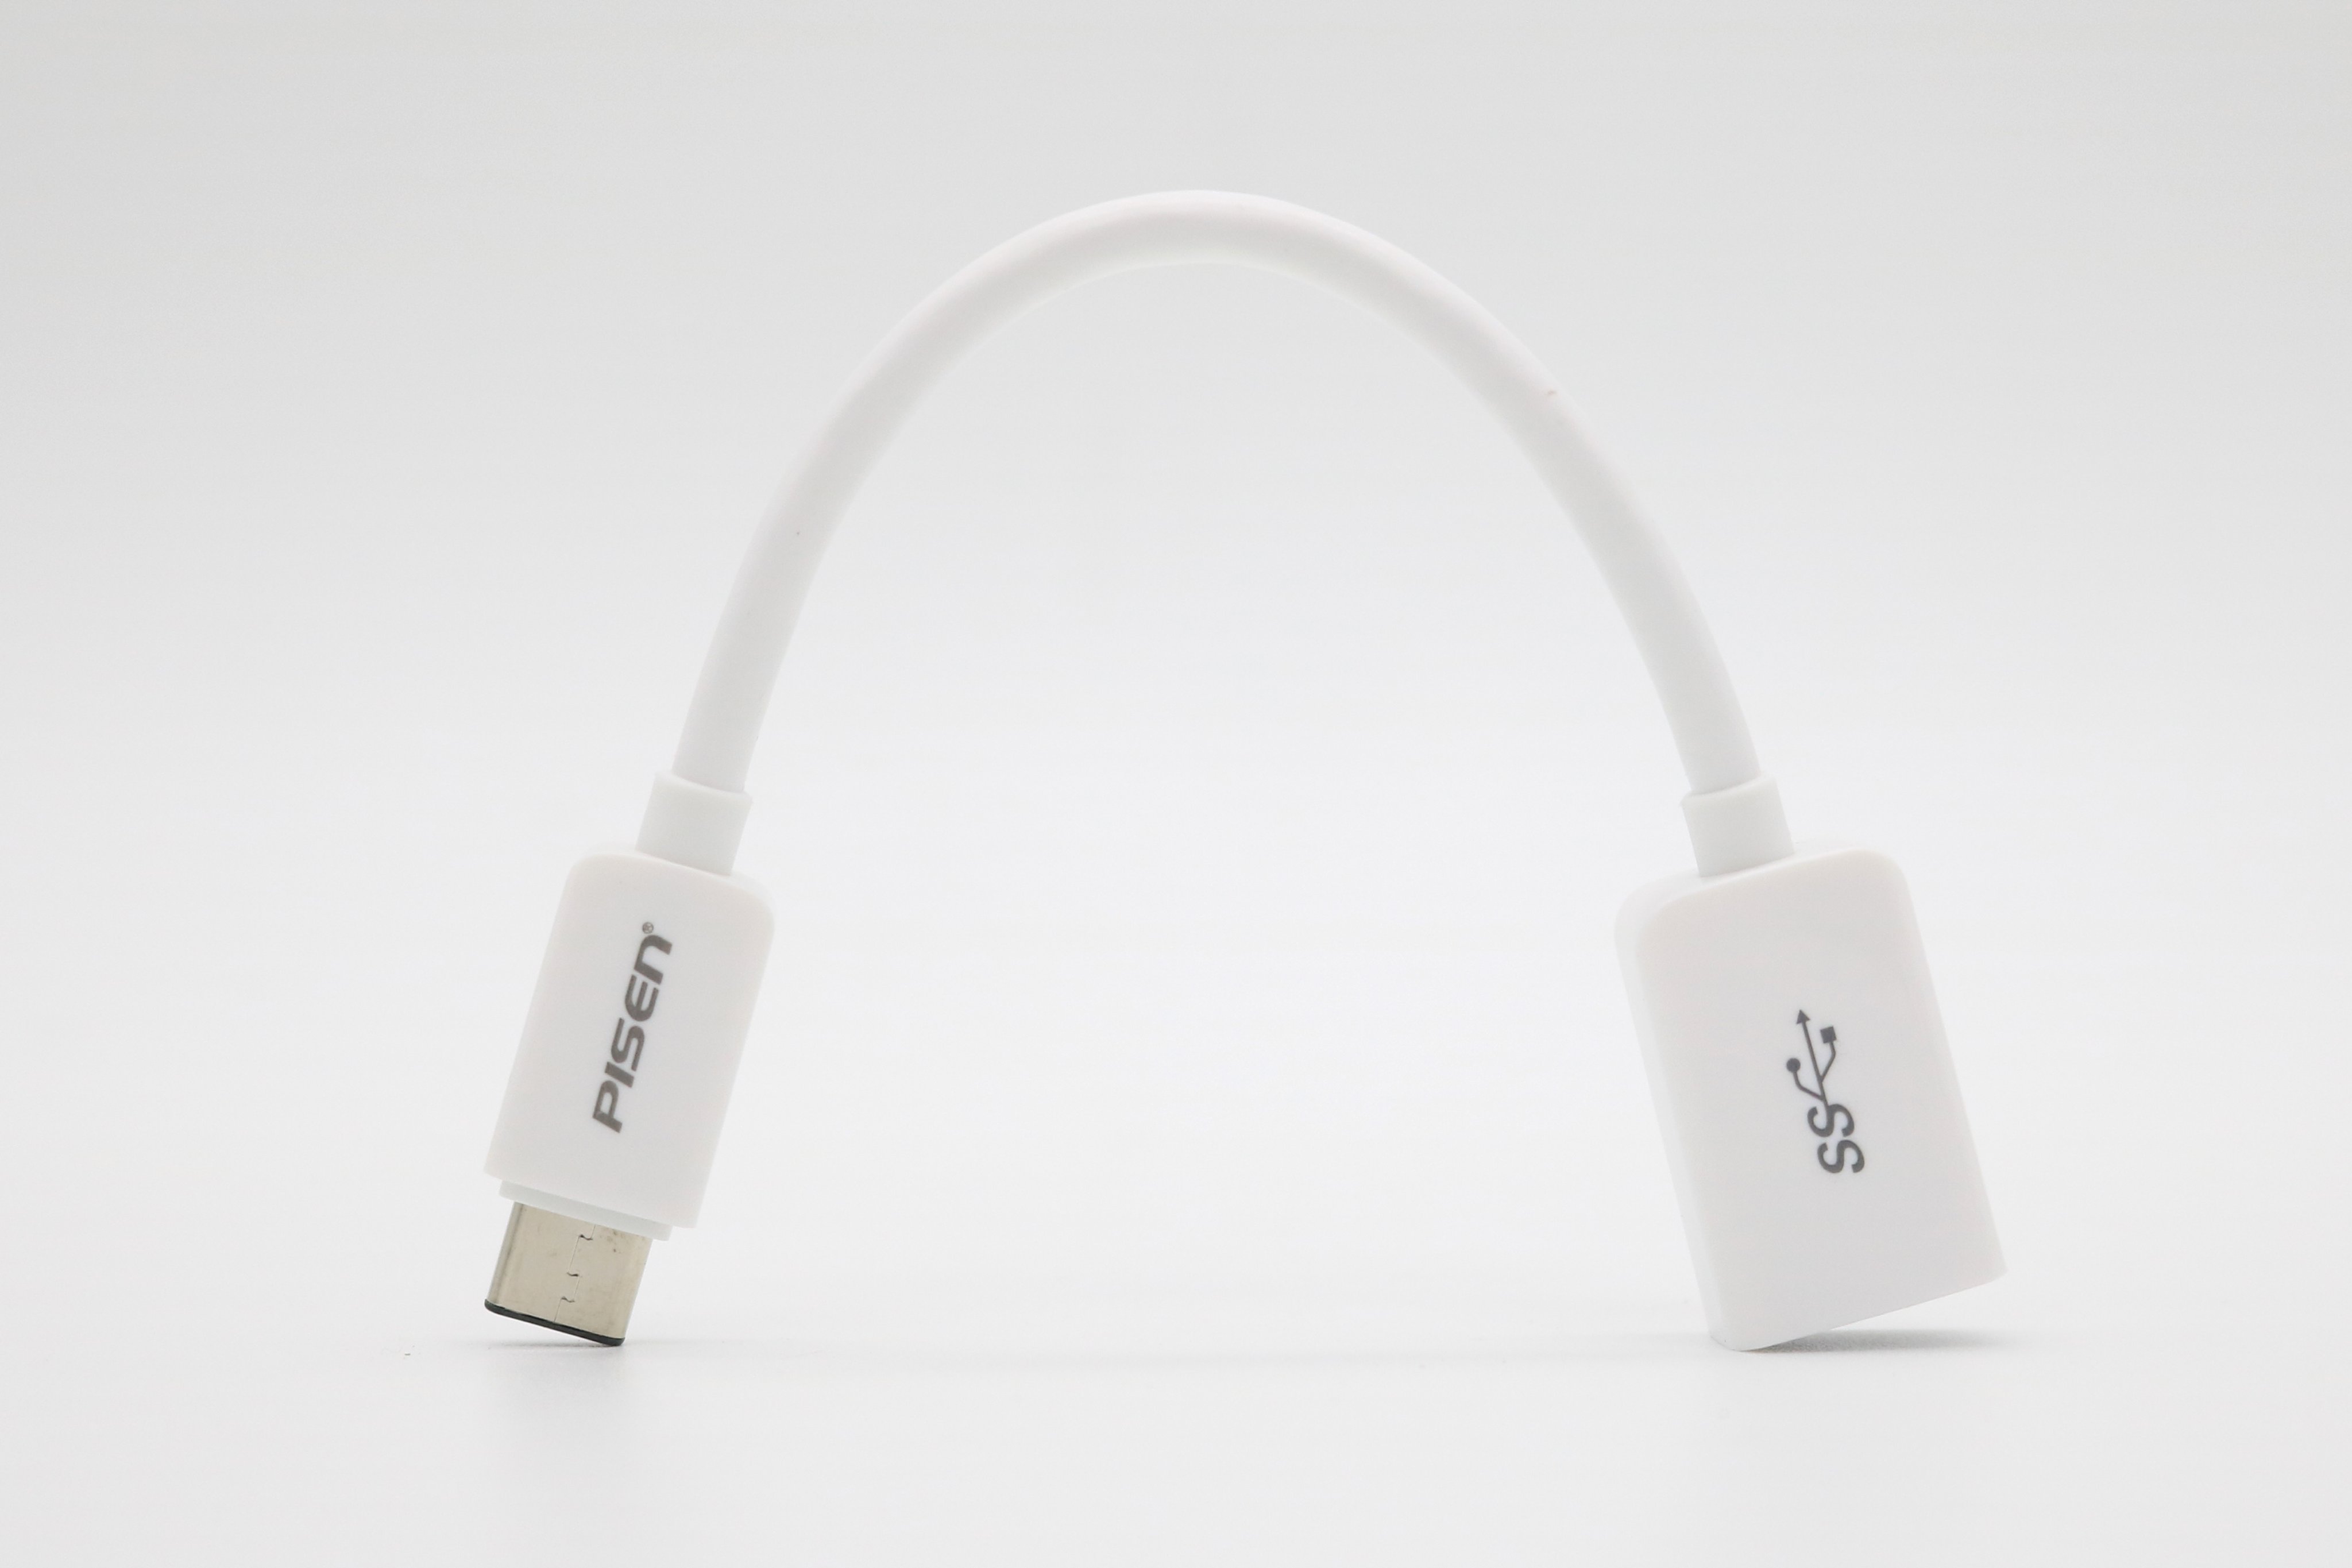 Cáp Pisen Type-C to OTG USB 3.0 - Hàng chính hãng